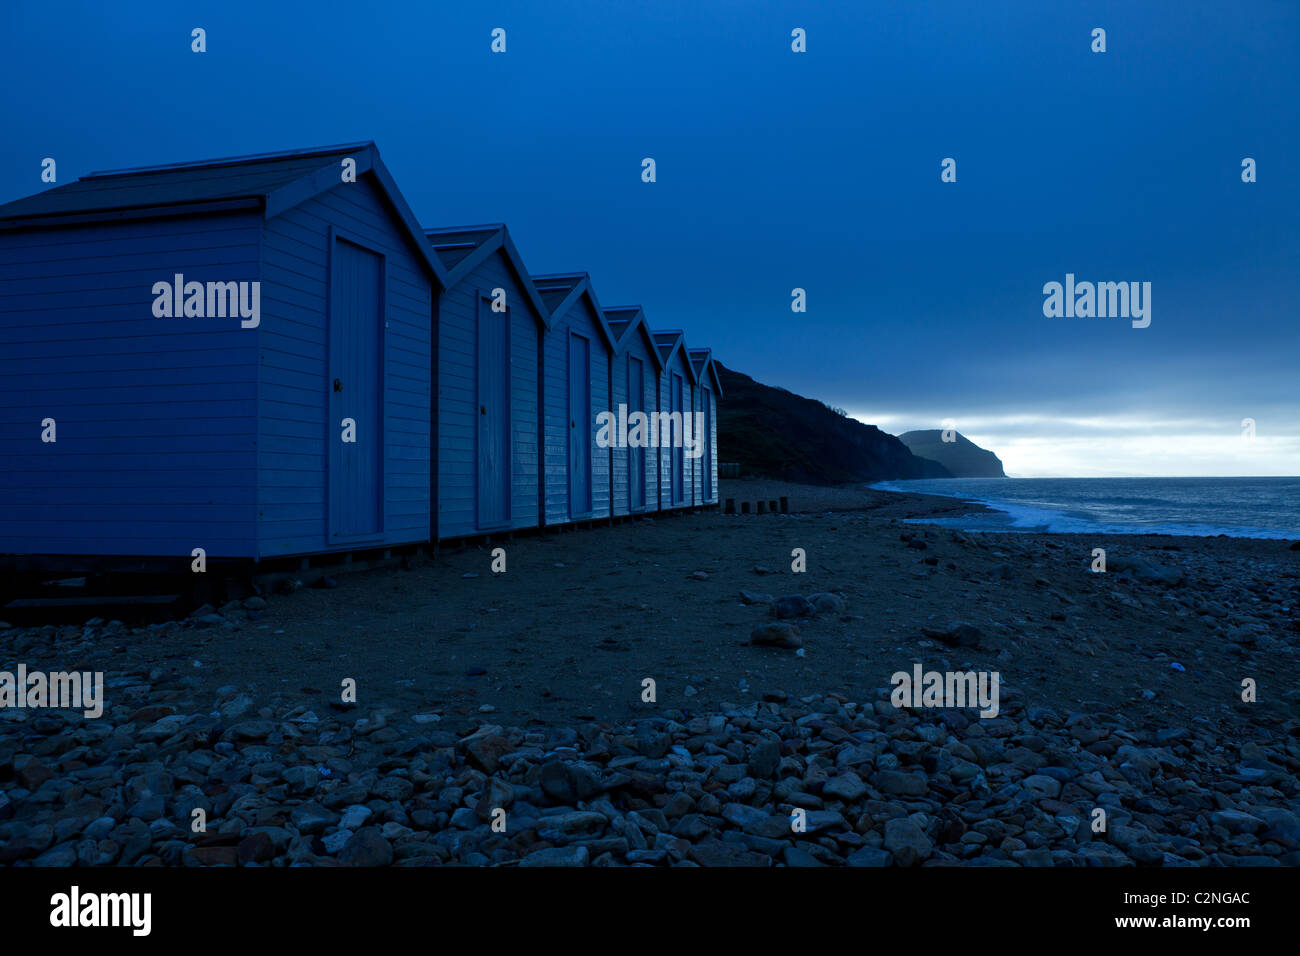 Beach Huts at dawn on Dorset coast at Charmouth Stock Photo